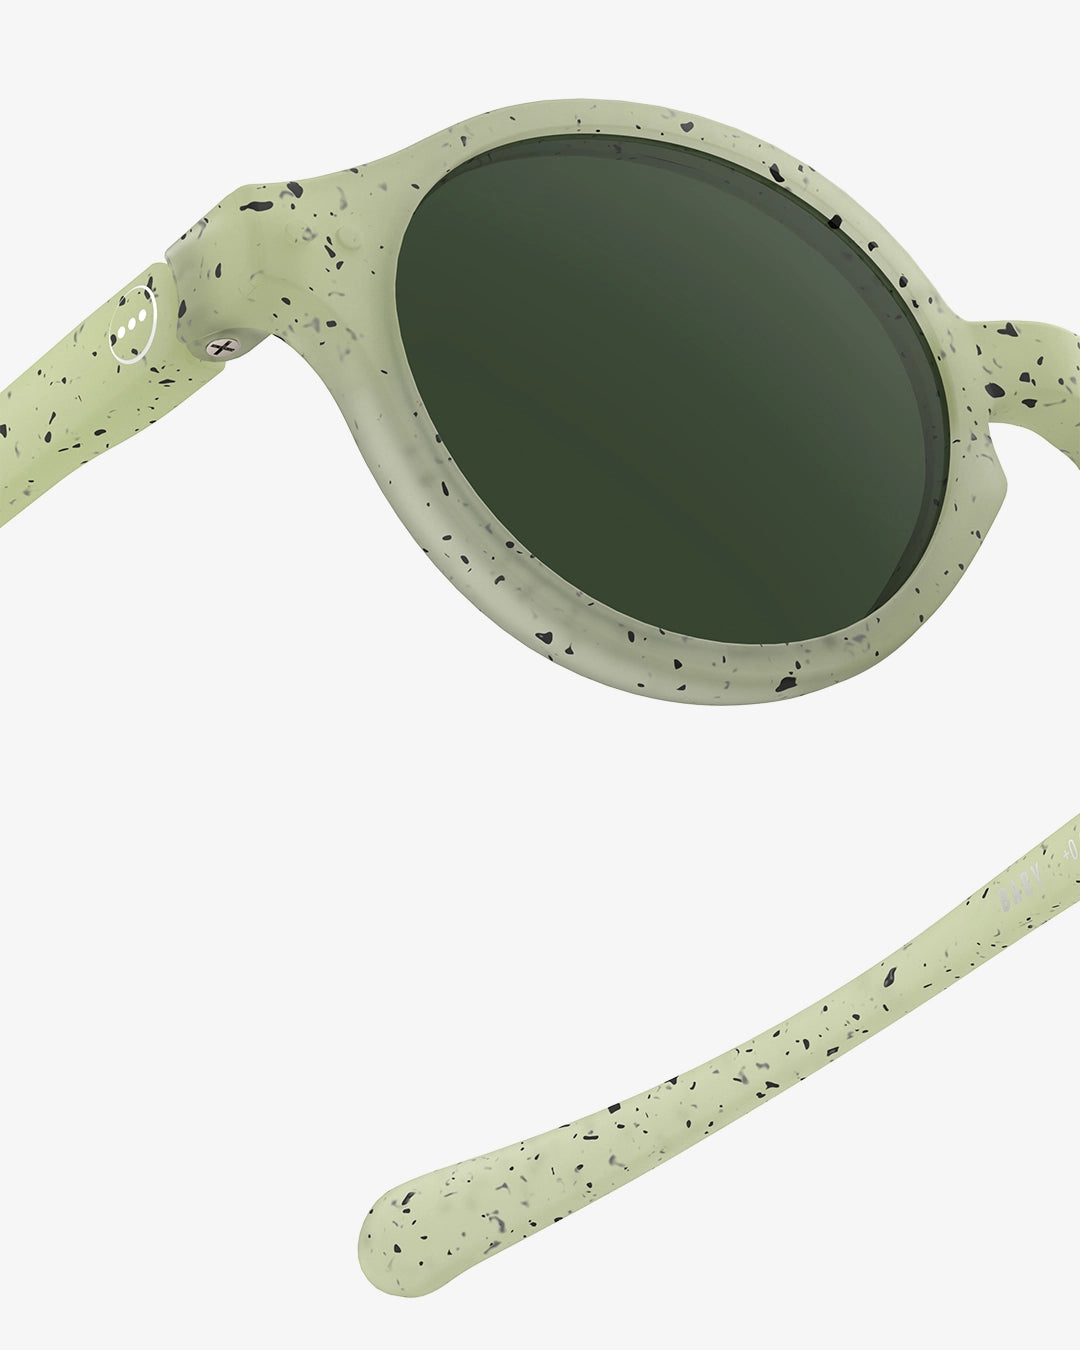 Óculos de Sol Dyed Green para bebés dos 0 aos 9 meses